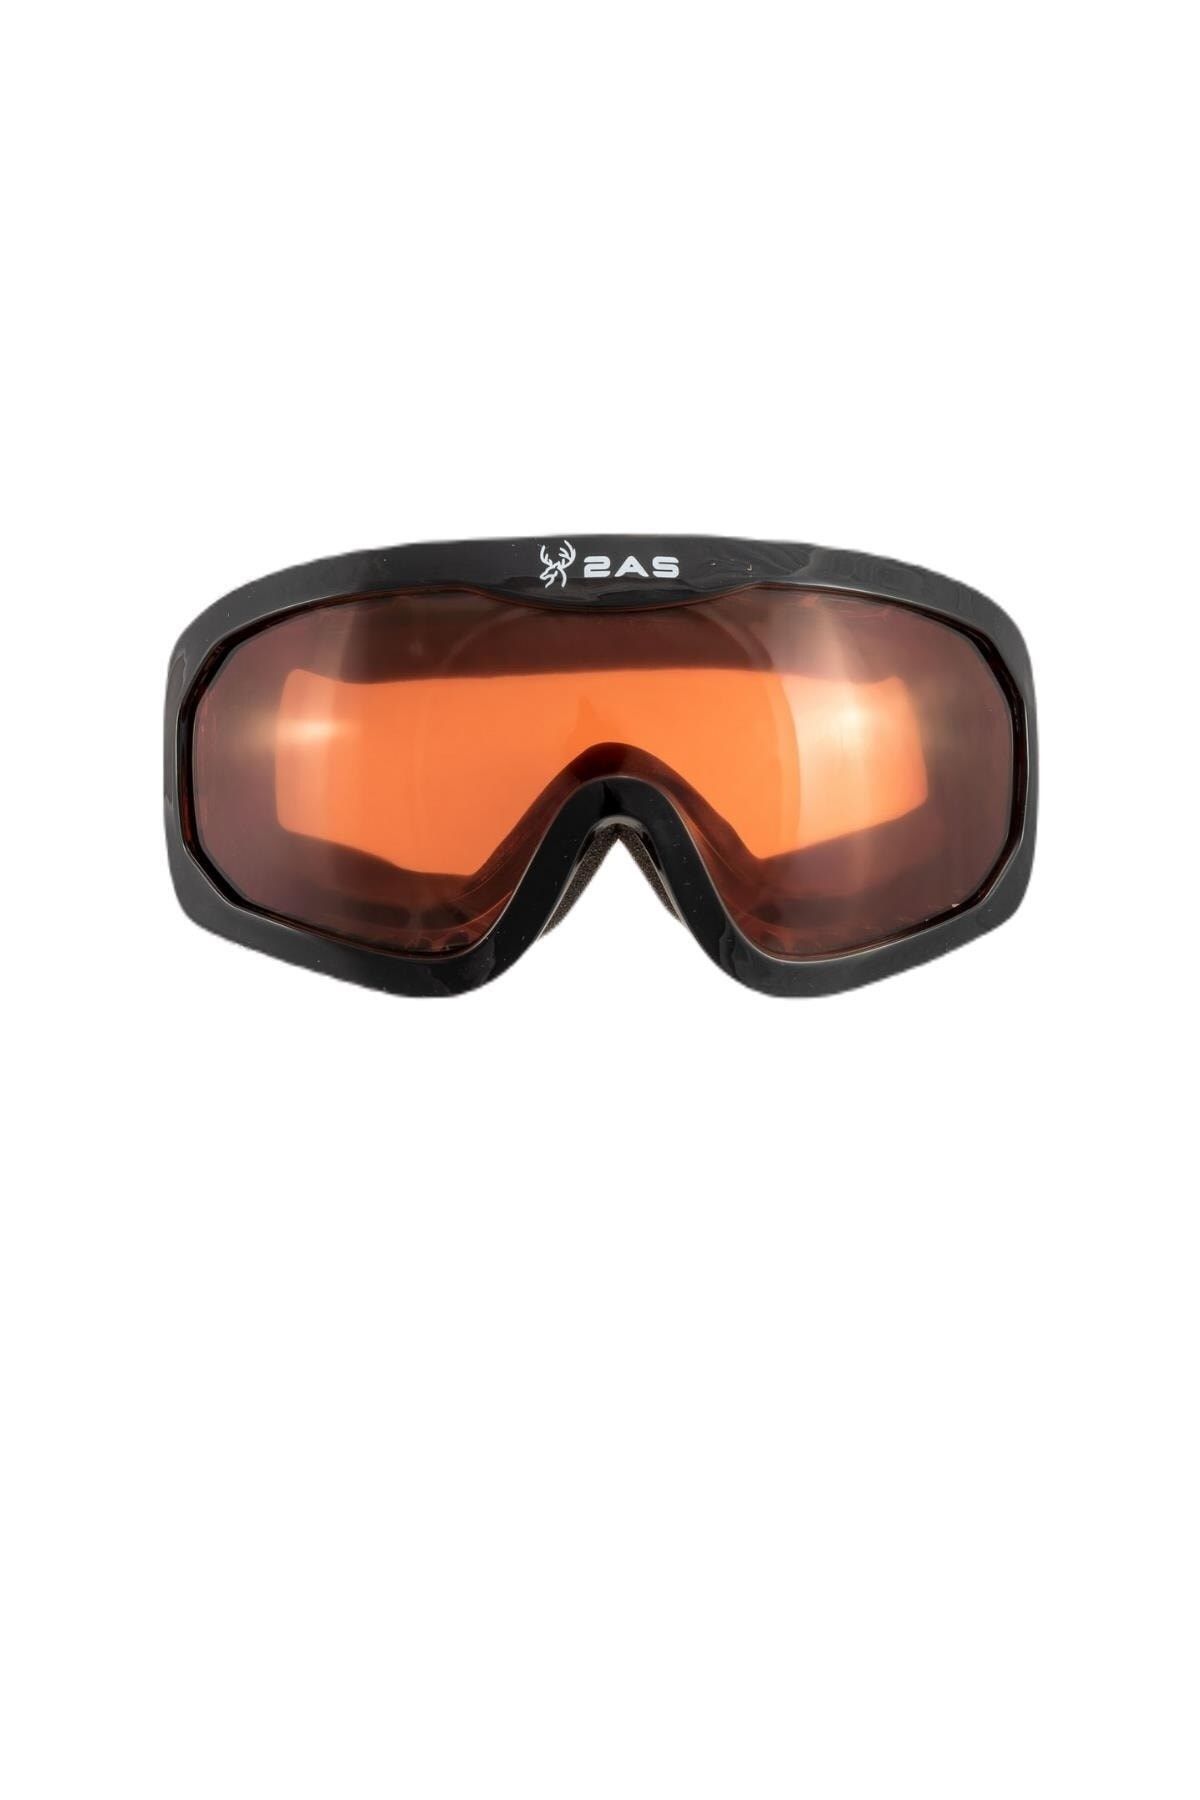 2AS Base Kid Kayak Gözlüğü 2ASBKD0404-0924